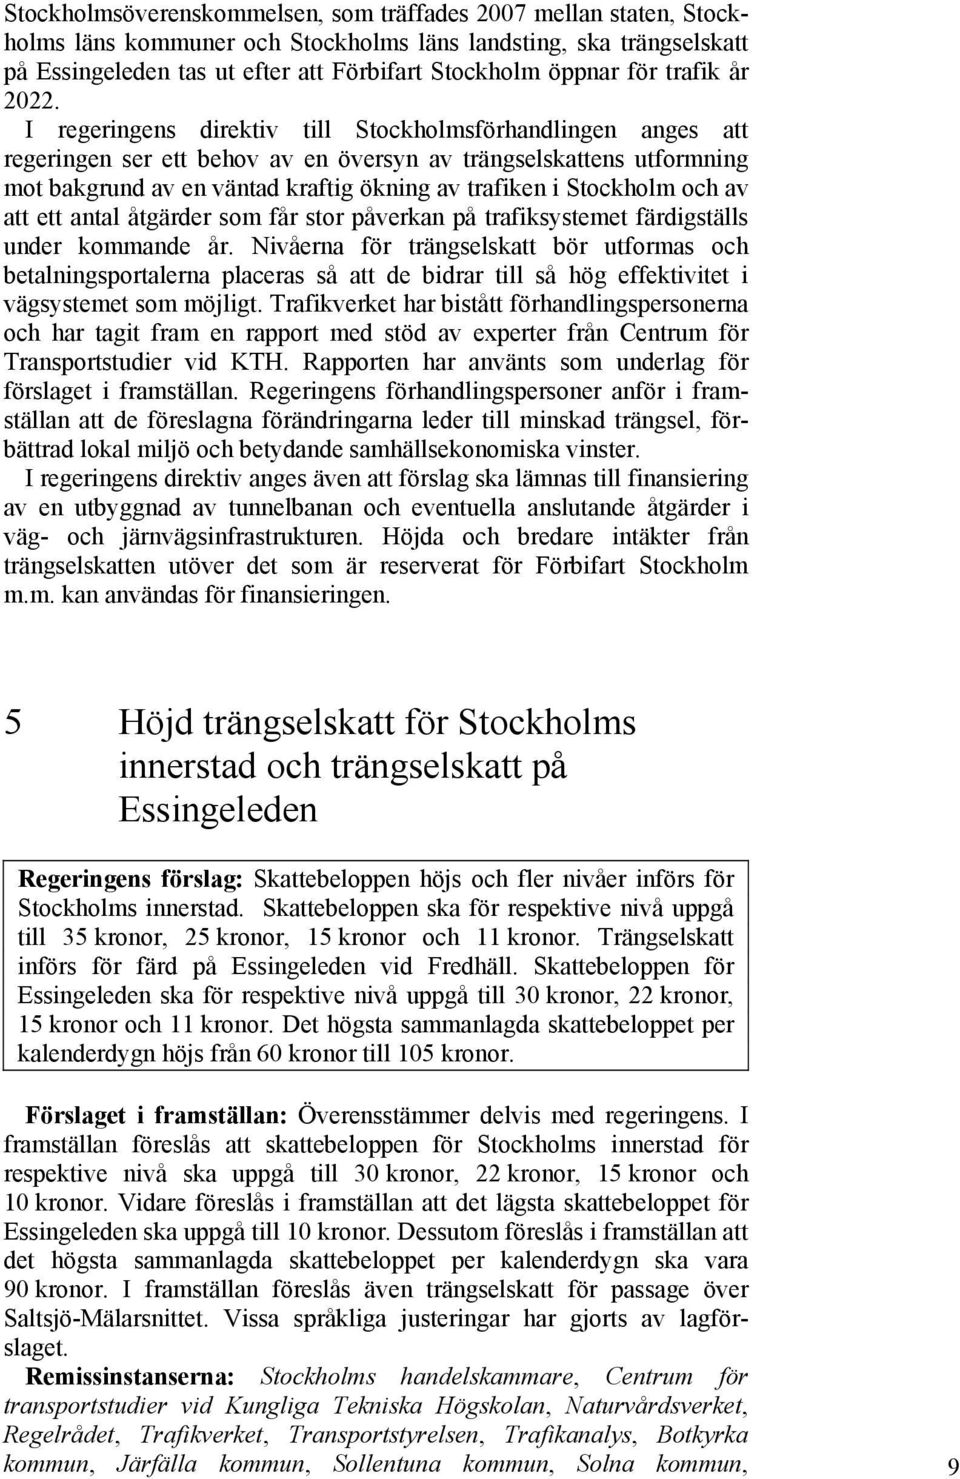 I regeringens direktiv till Stockholmsförhandlingen anges att regeringen ser ett behov av en översyn av trängselskattens utformning mot bakgrund av en väntad kraftig ökning av trafiken i Stockholm